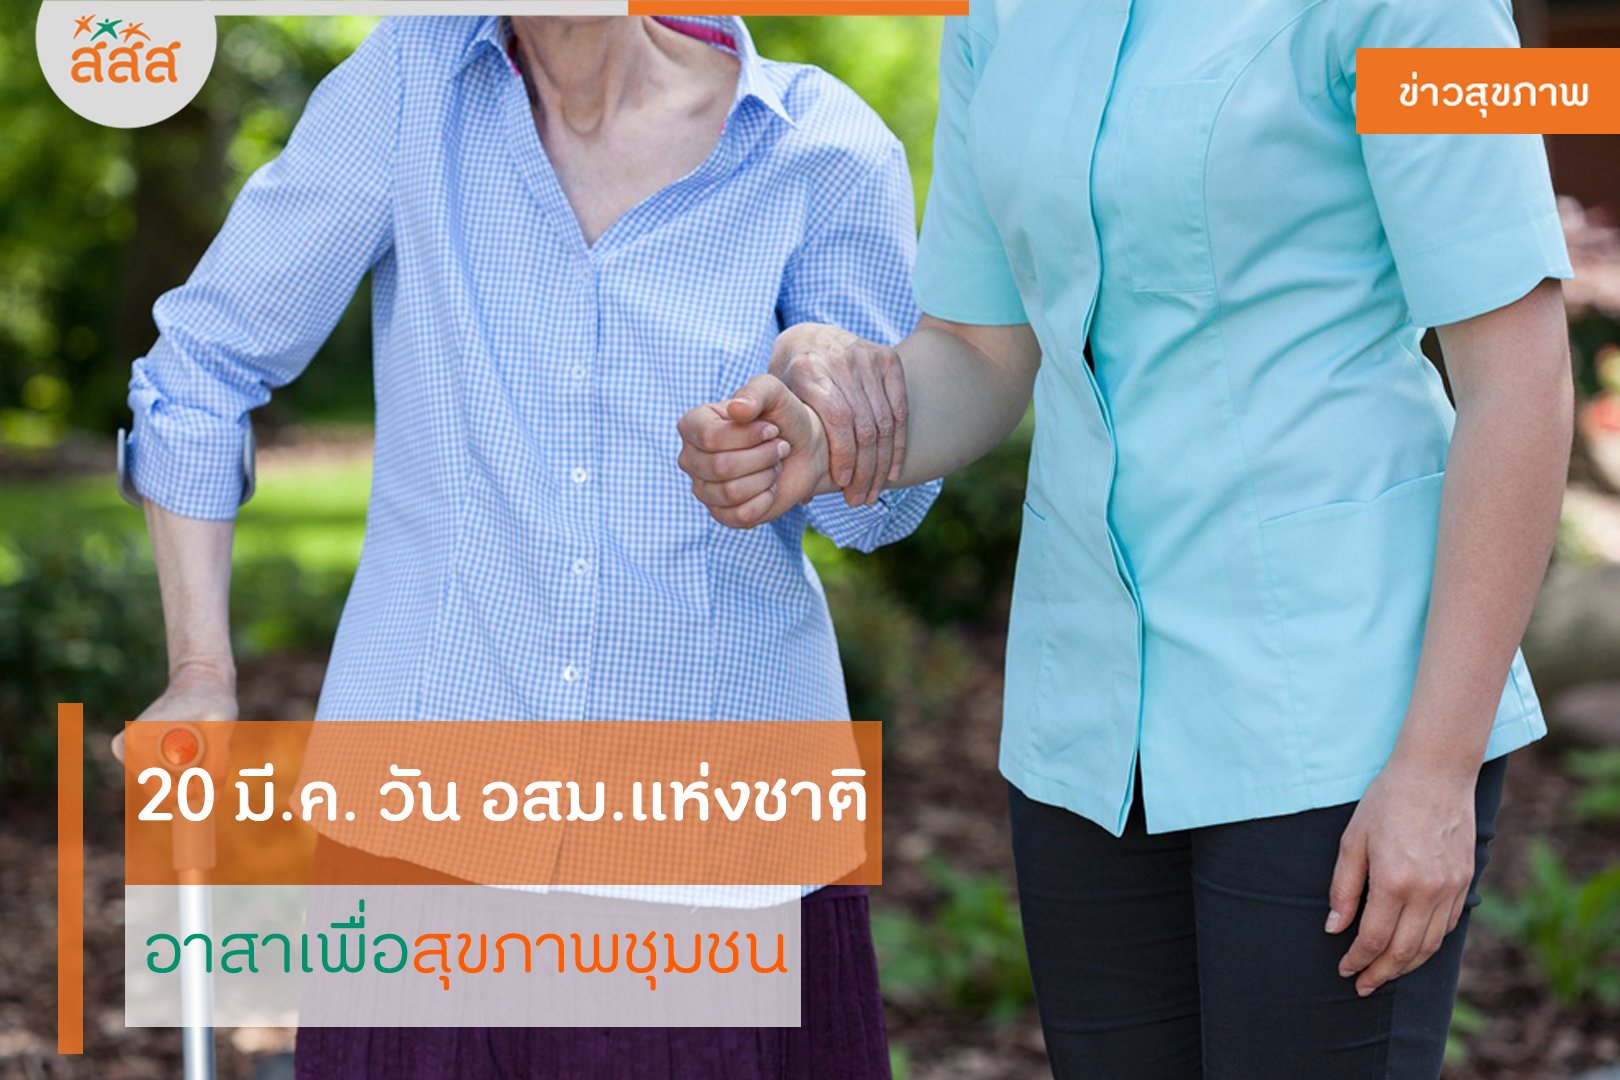 20 มี.ค. วัน อสม.แห่งชาติ อาสาเพื่อสุขภาพชุมชน thaihealth